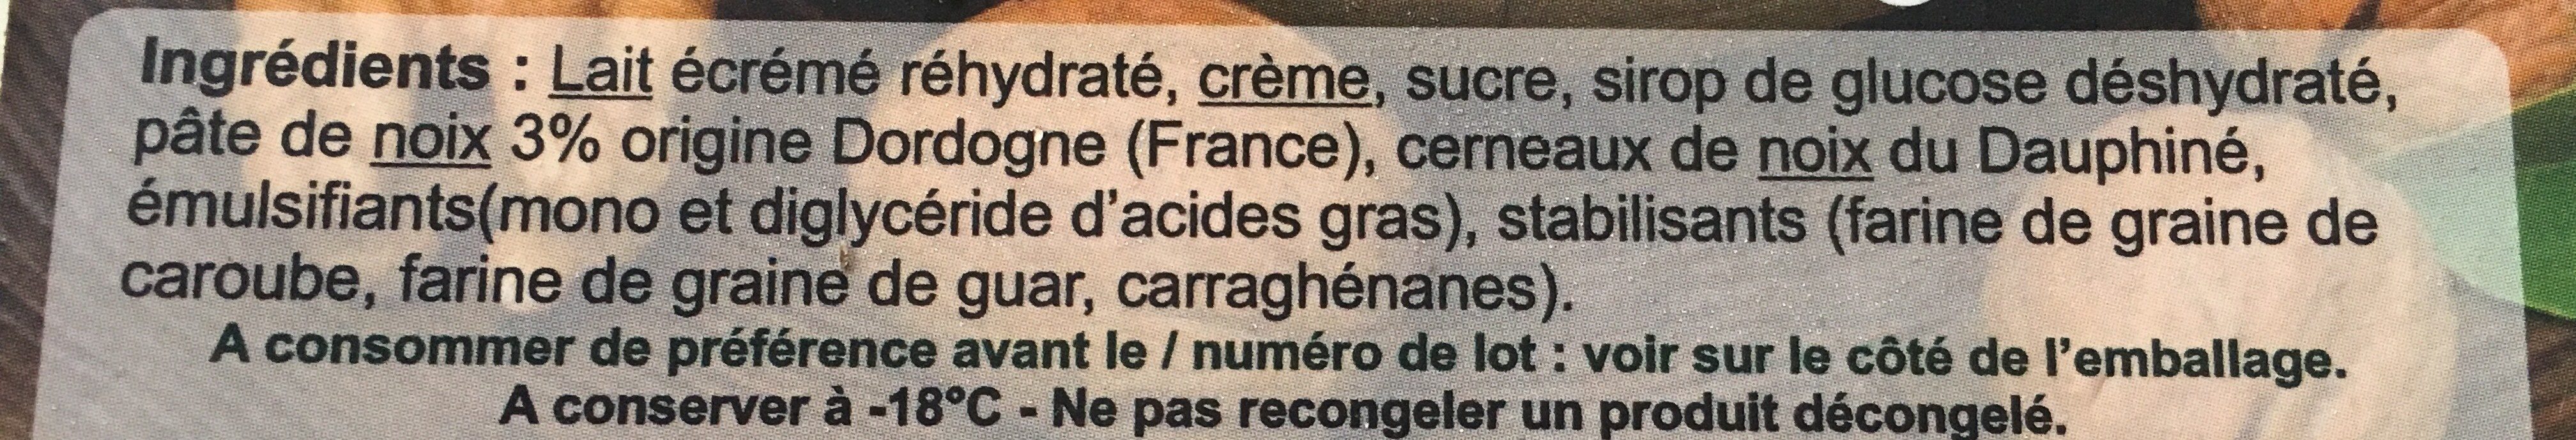 Crème glacée noix - Ingrédients - fr